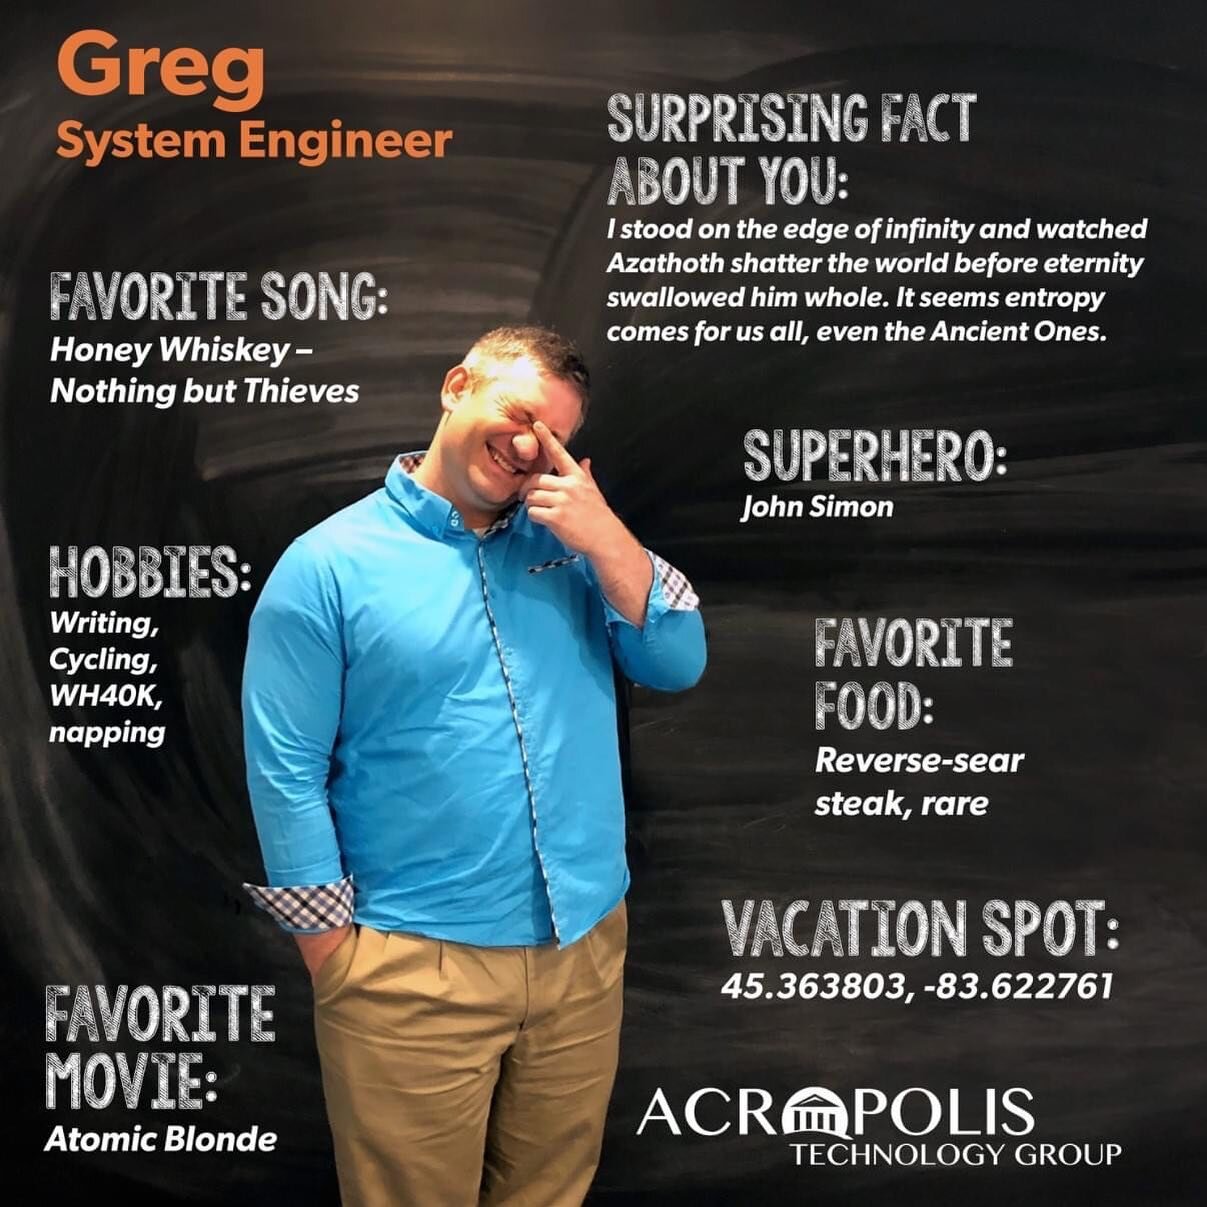 一月员工的焦点:
Greg -系统工程师
OD真人官网想提醒大家注意格雷格最近在圣诞节周末为OD真人官网的一个客户所做的辛勤工作. 他在那个星期一就把它们准备好了. 格雷格是一个完美的例子